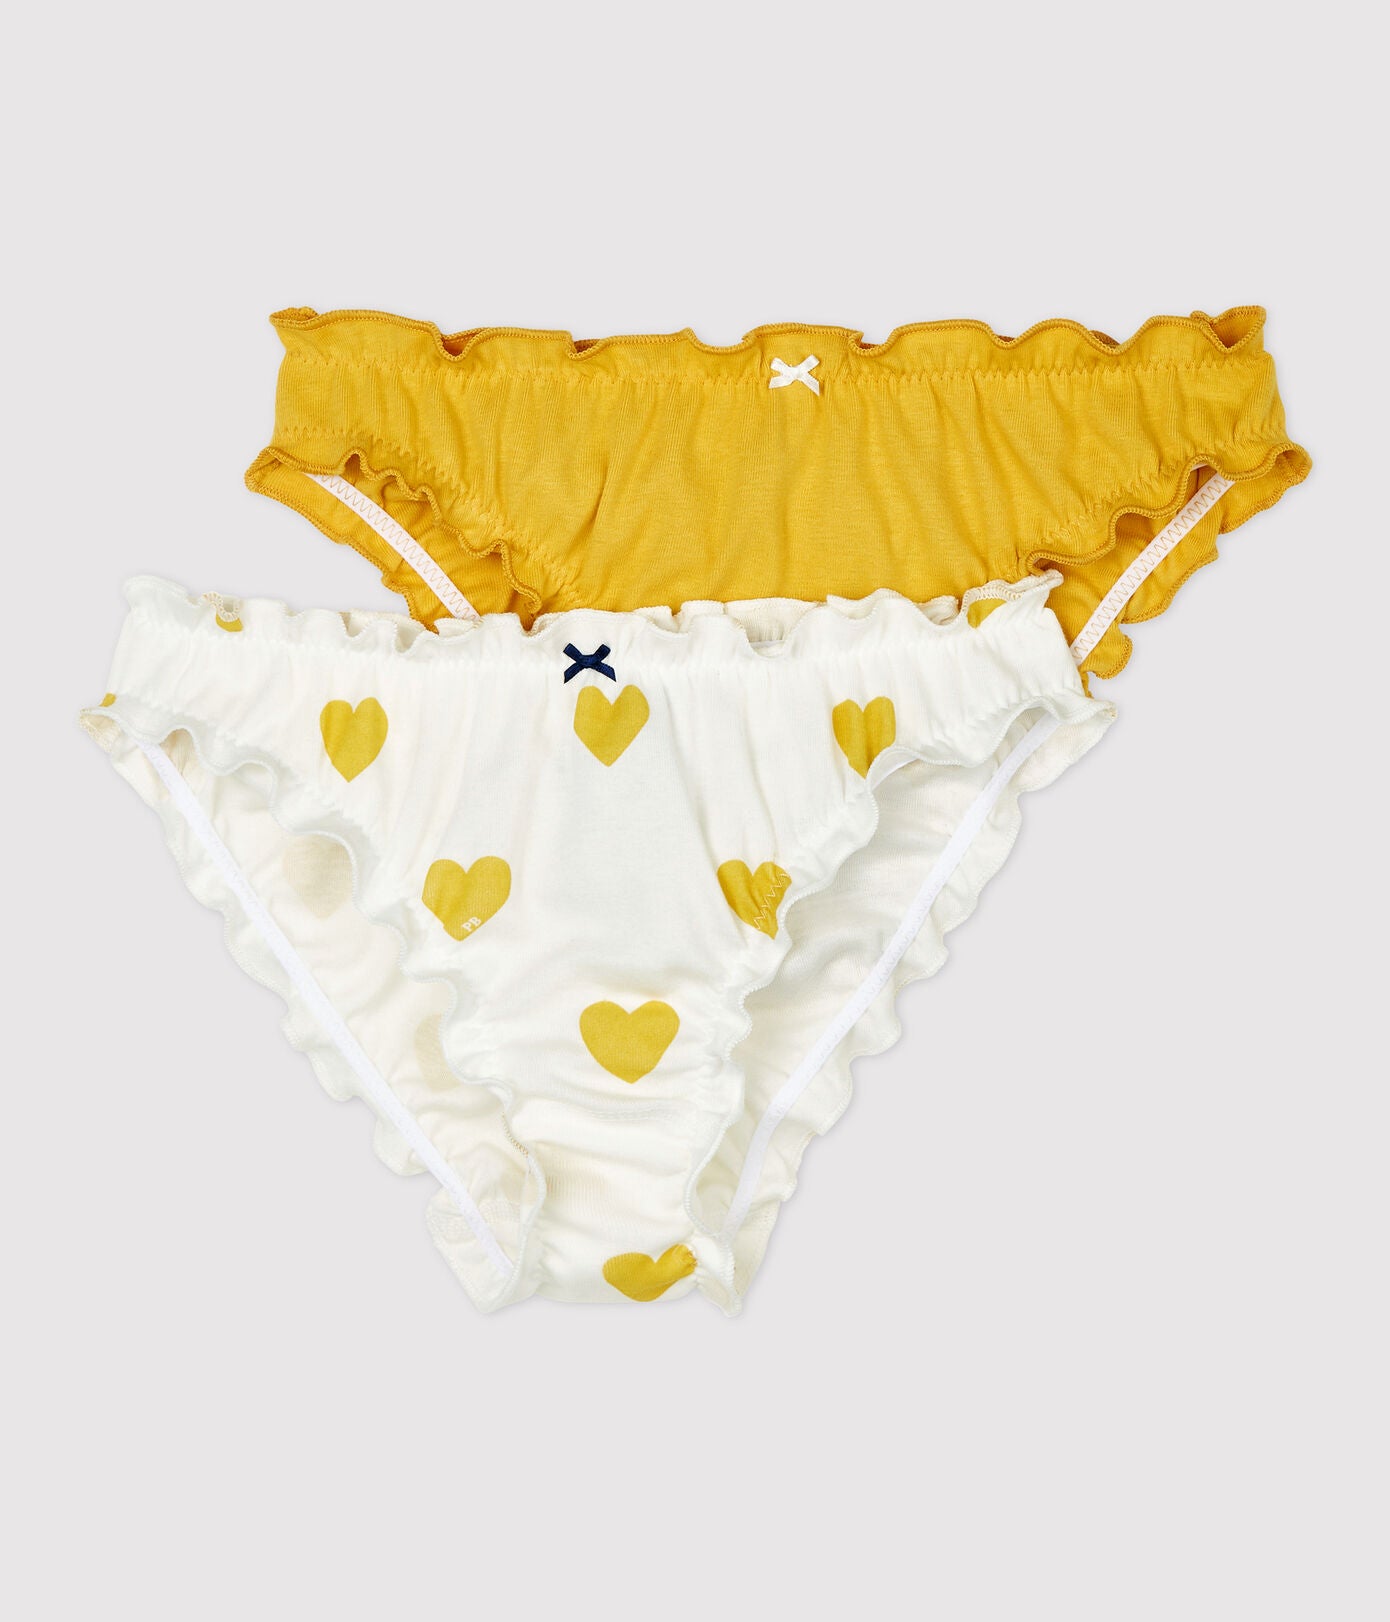 Girls White & Yellow Cotton Underwear Set (2 Pack)